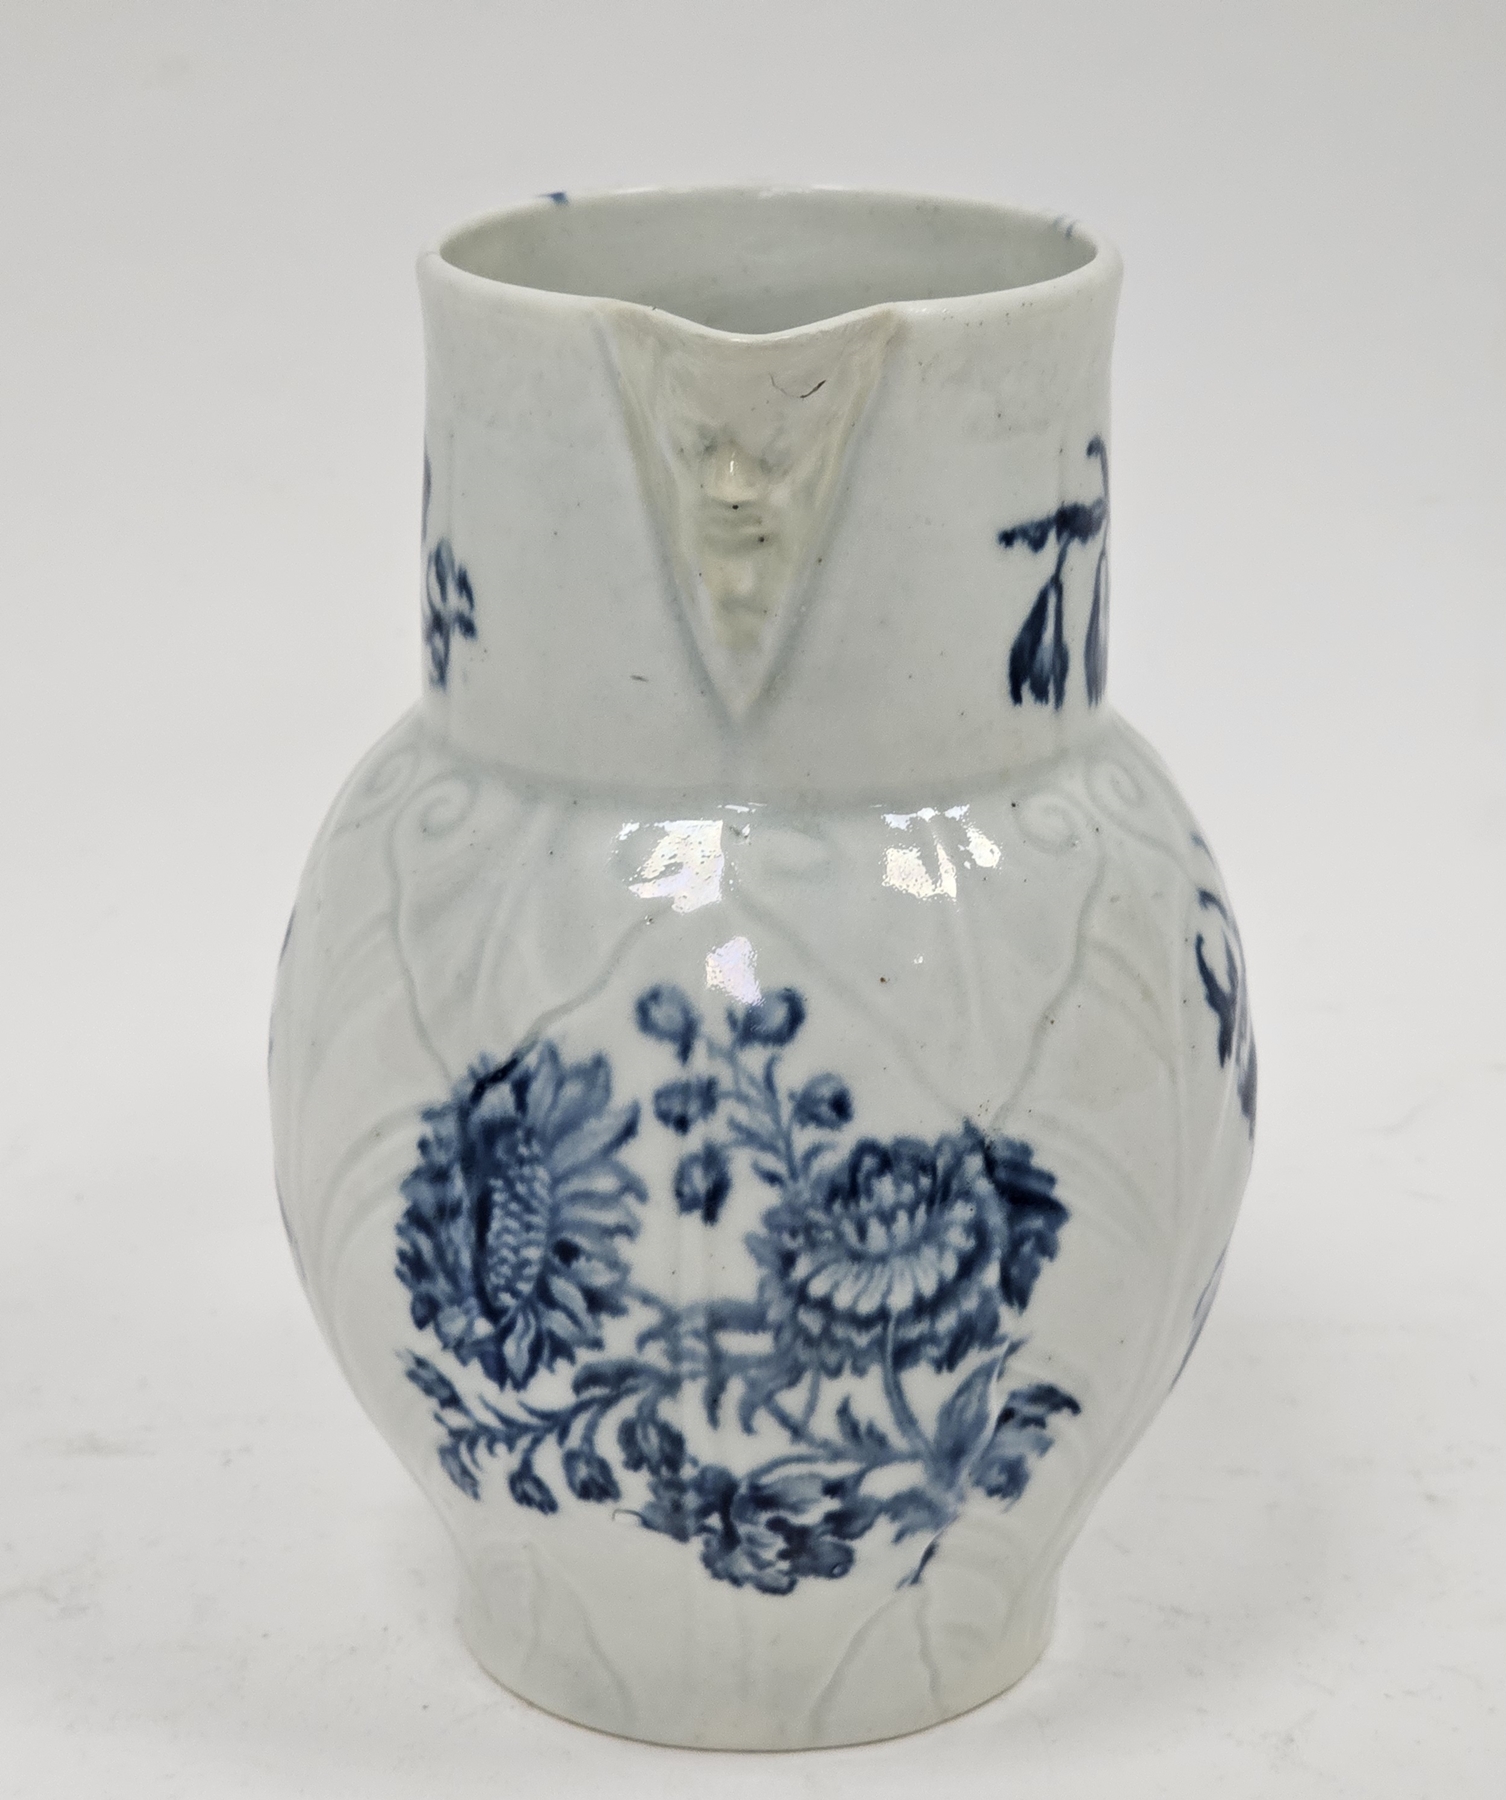 Worcester porcelain small cabbage leaf moulded mask jug, circa 1780, blue crescent mark, with mask - Image 2 of 4